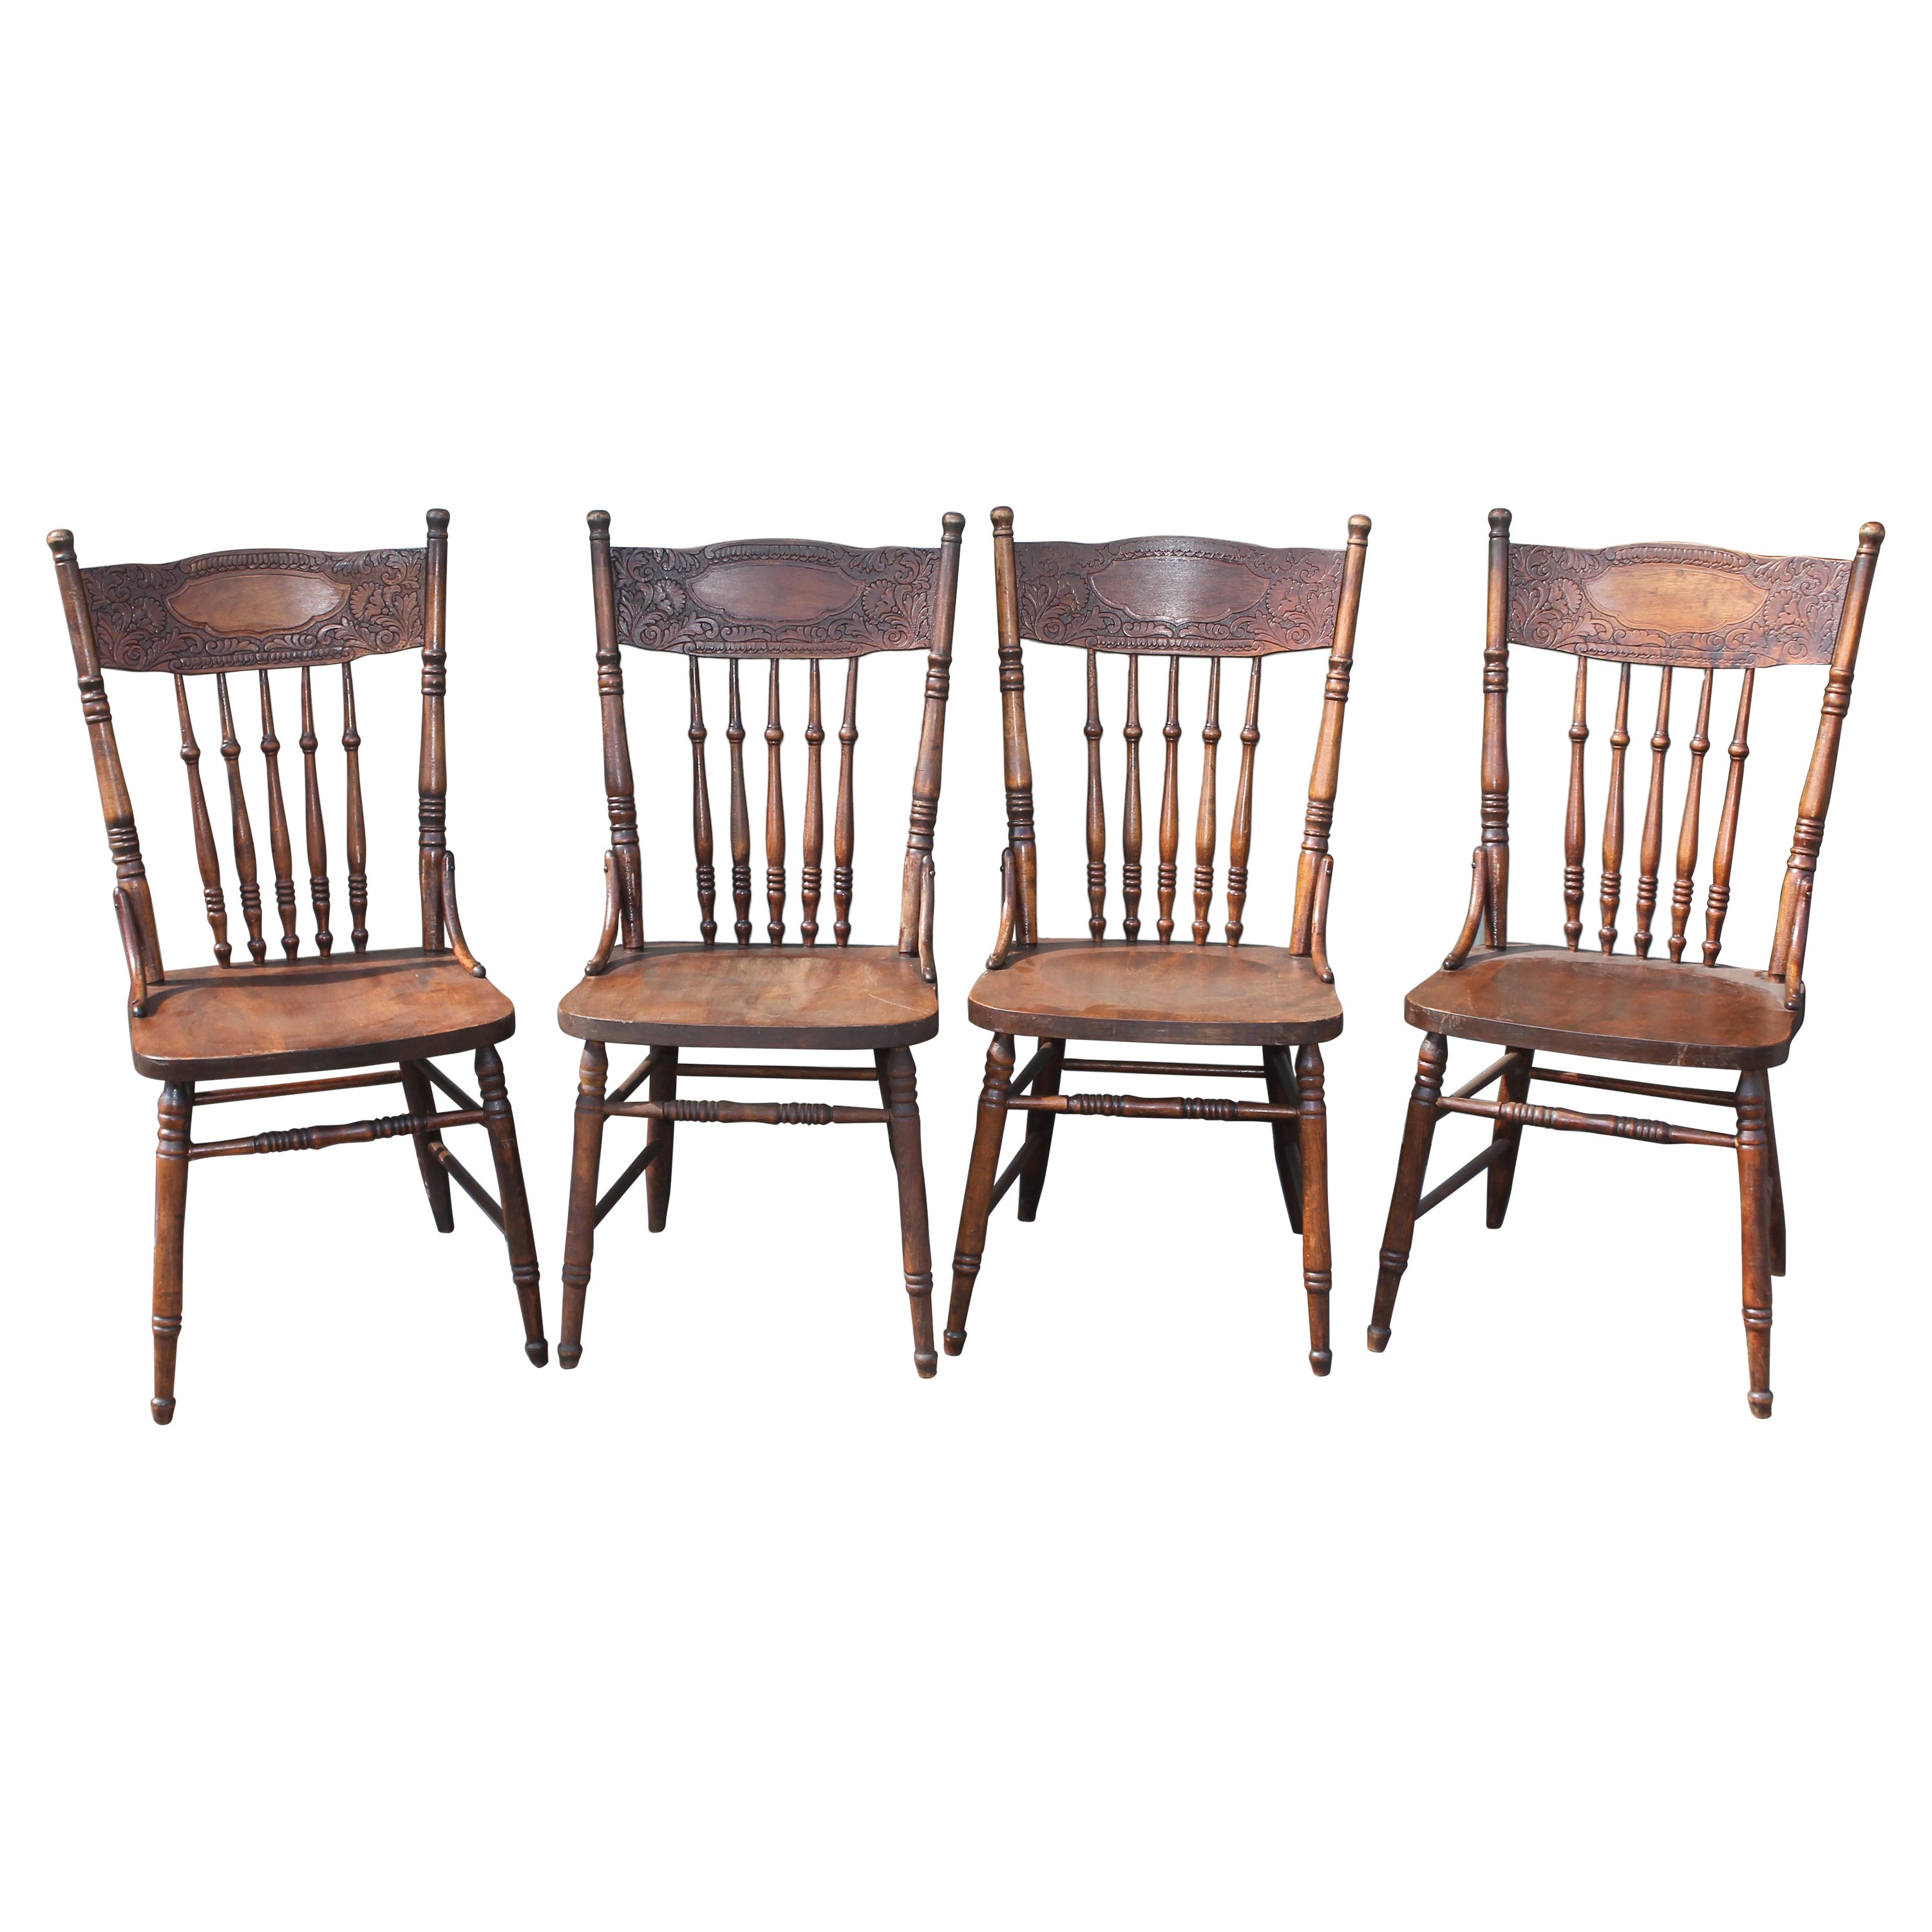 Satz von vier Stühlen mit Pressrückenlehne im Ranch-Stil des 19. Jahrhunderts